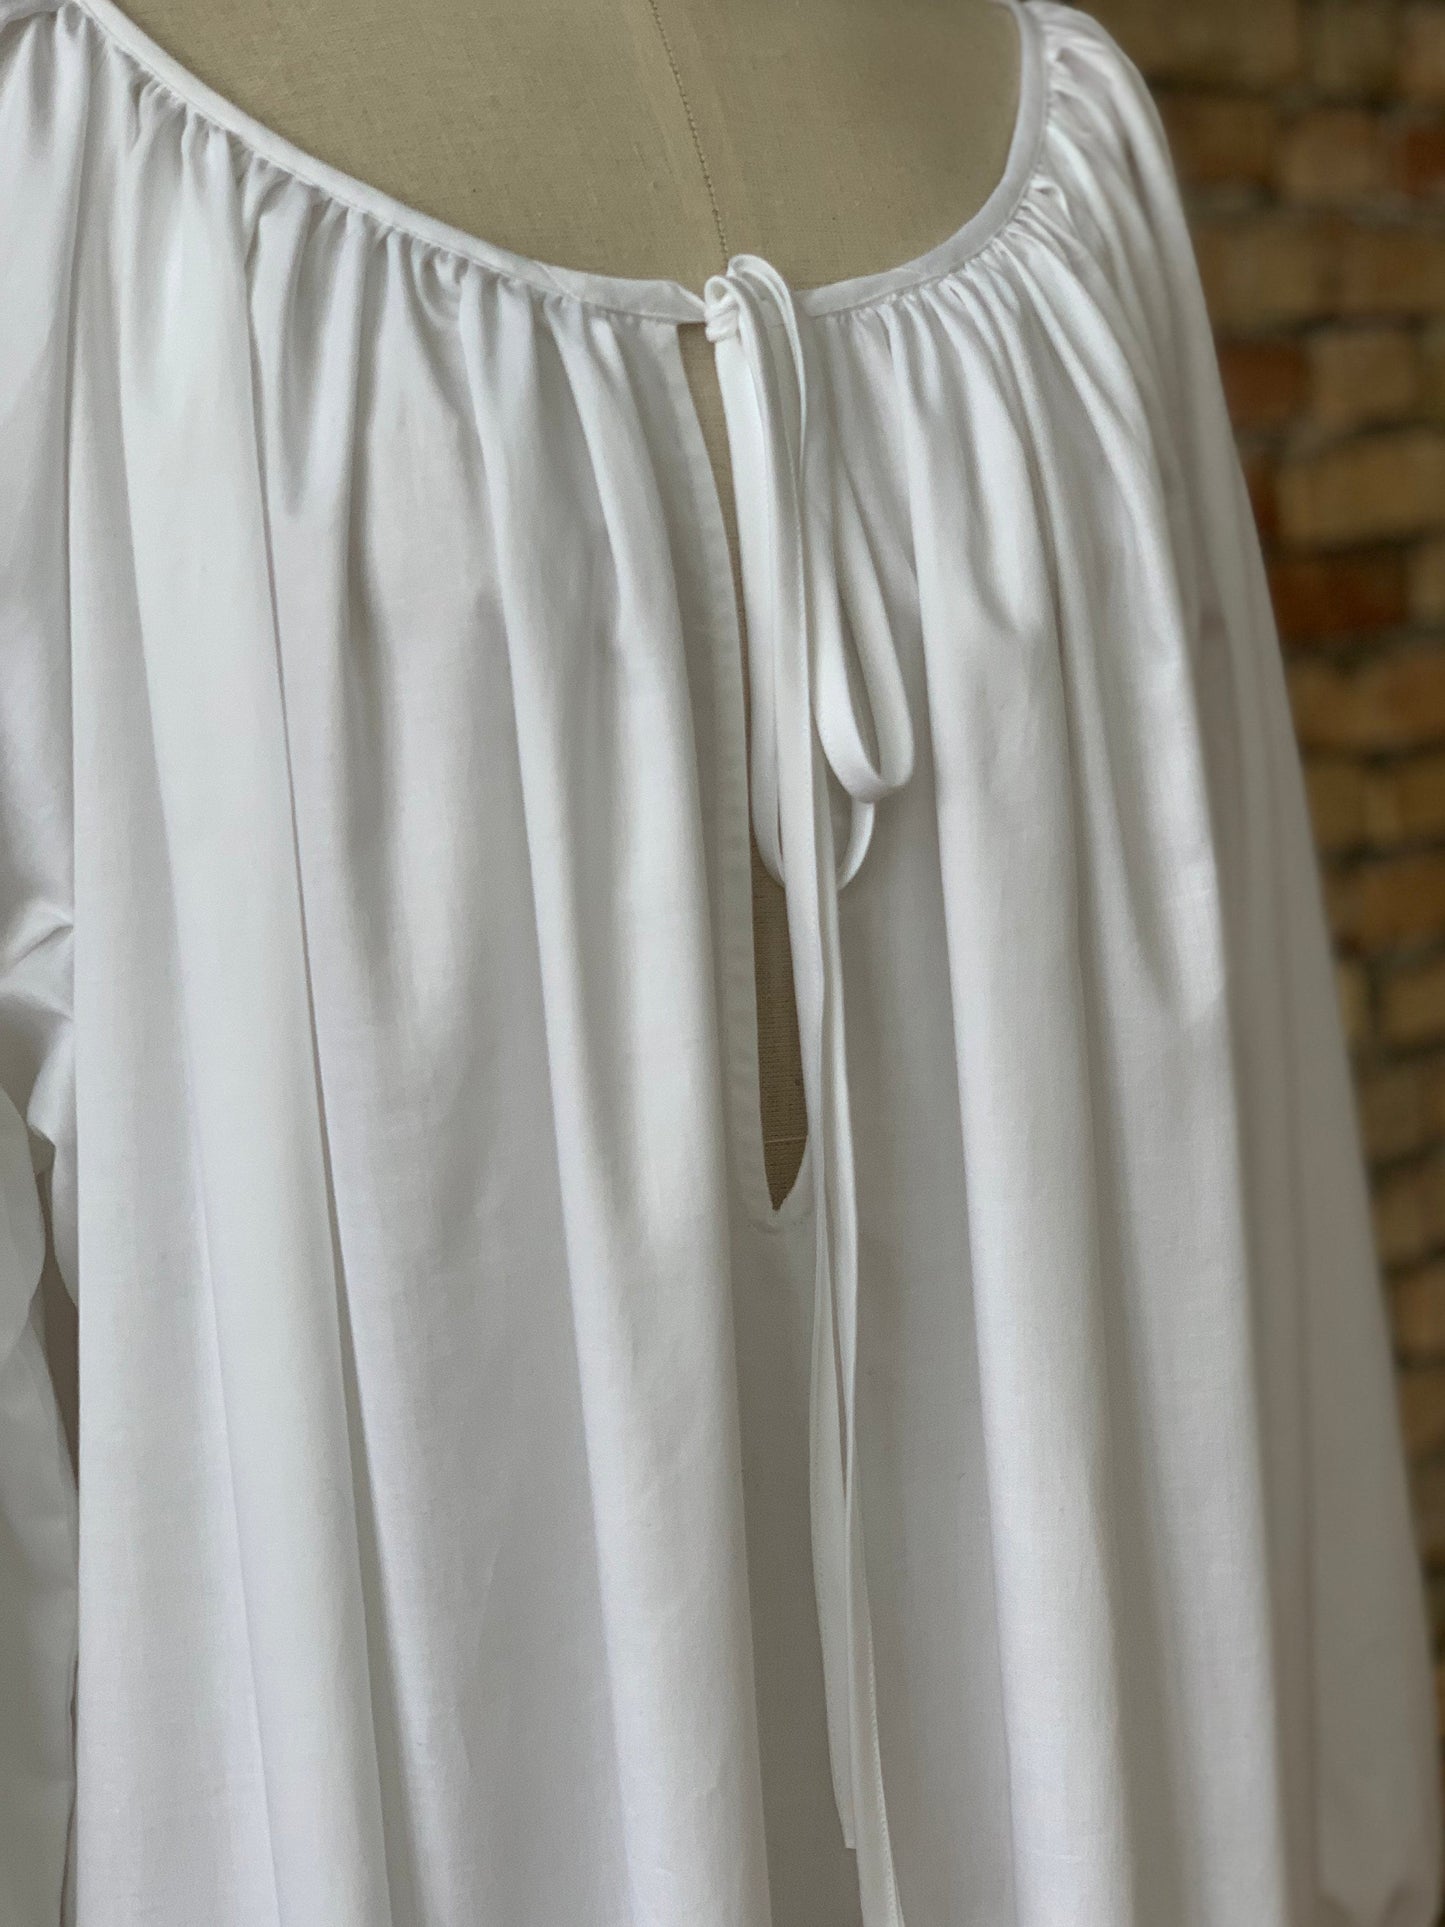 Milda Gown in White Cotton